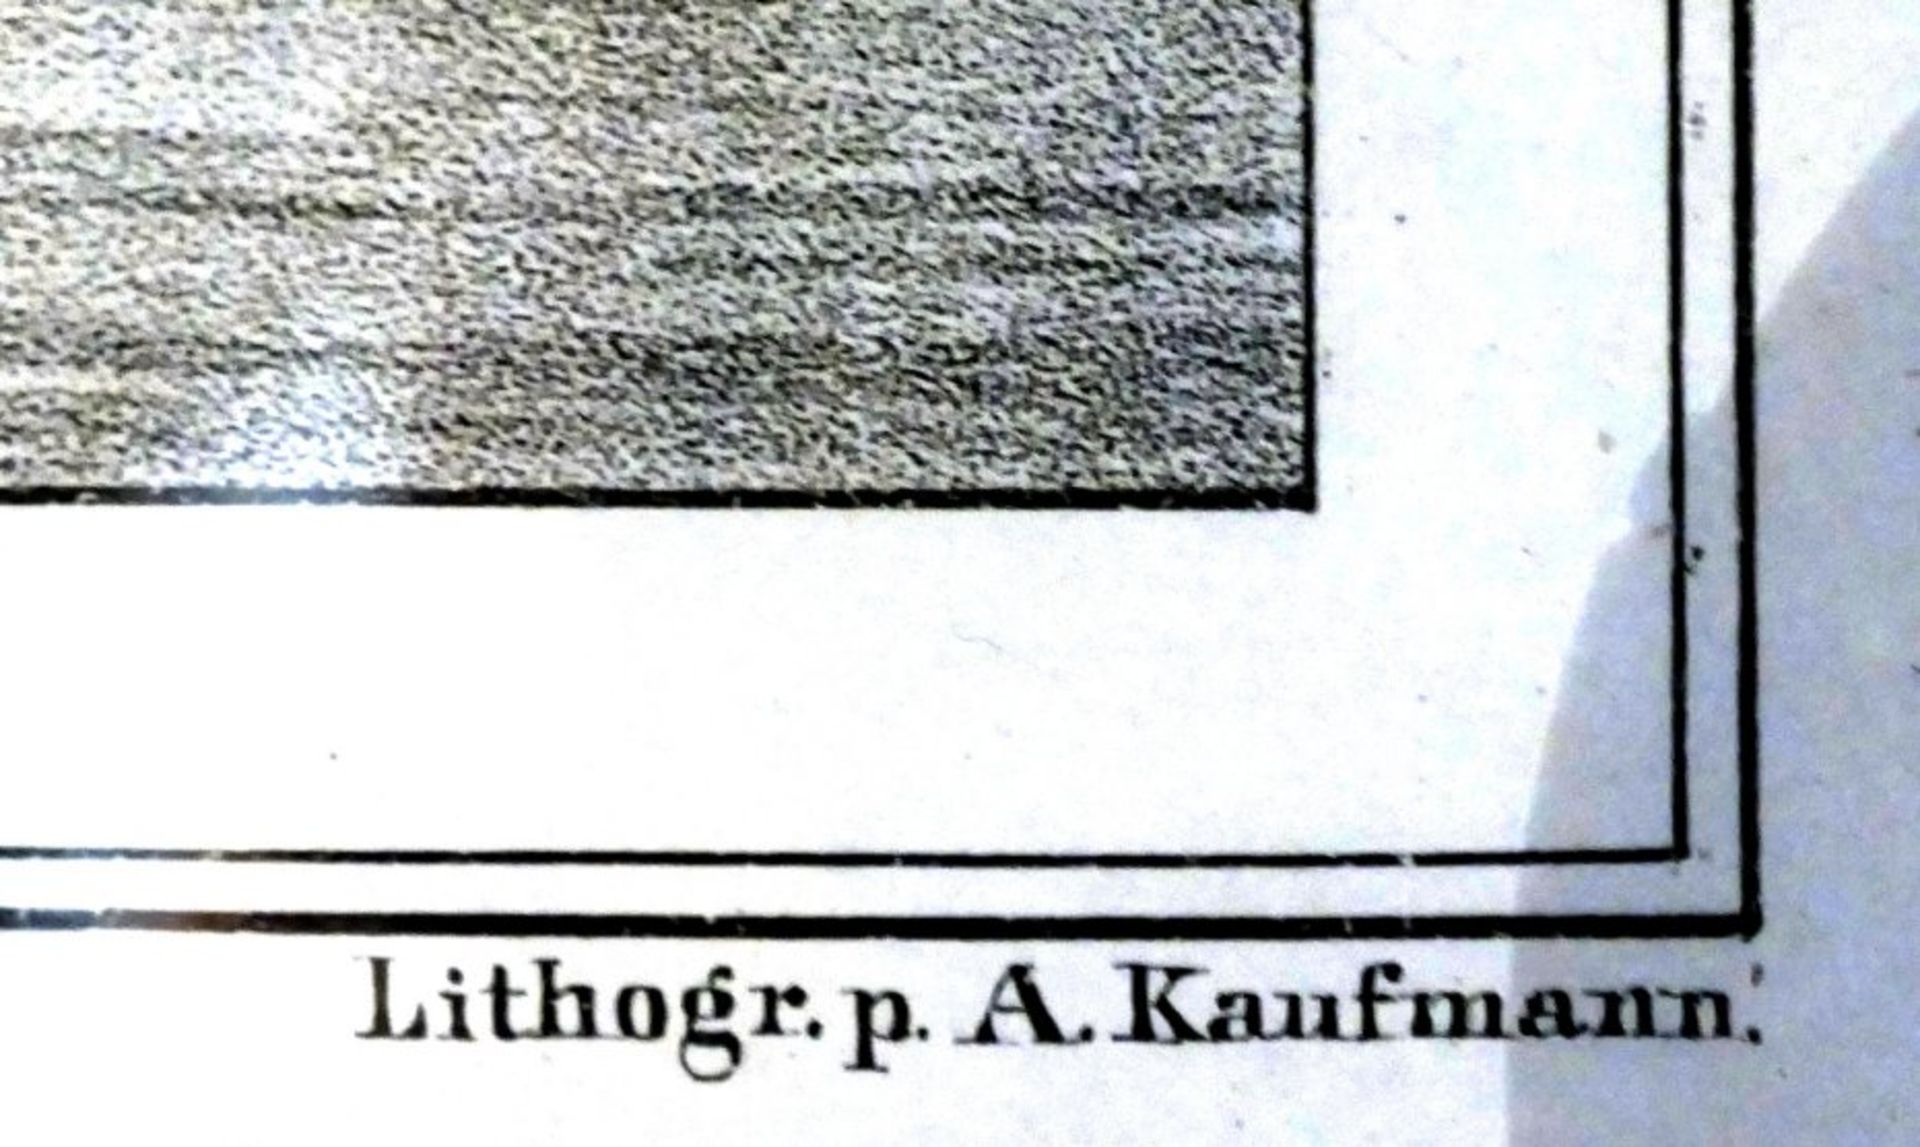 grosse Lithografie nach A.Kaufmann, Hamburger Hafen, 19.Jhd., ger/Glas, leicht fleckig, RG 56x75 cm - Bild 3 aus 6